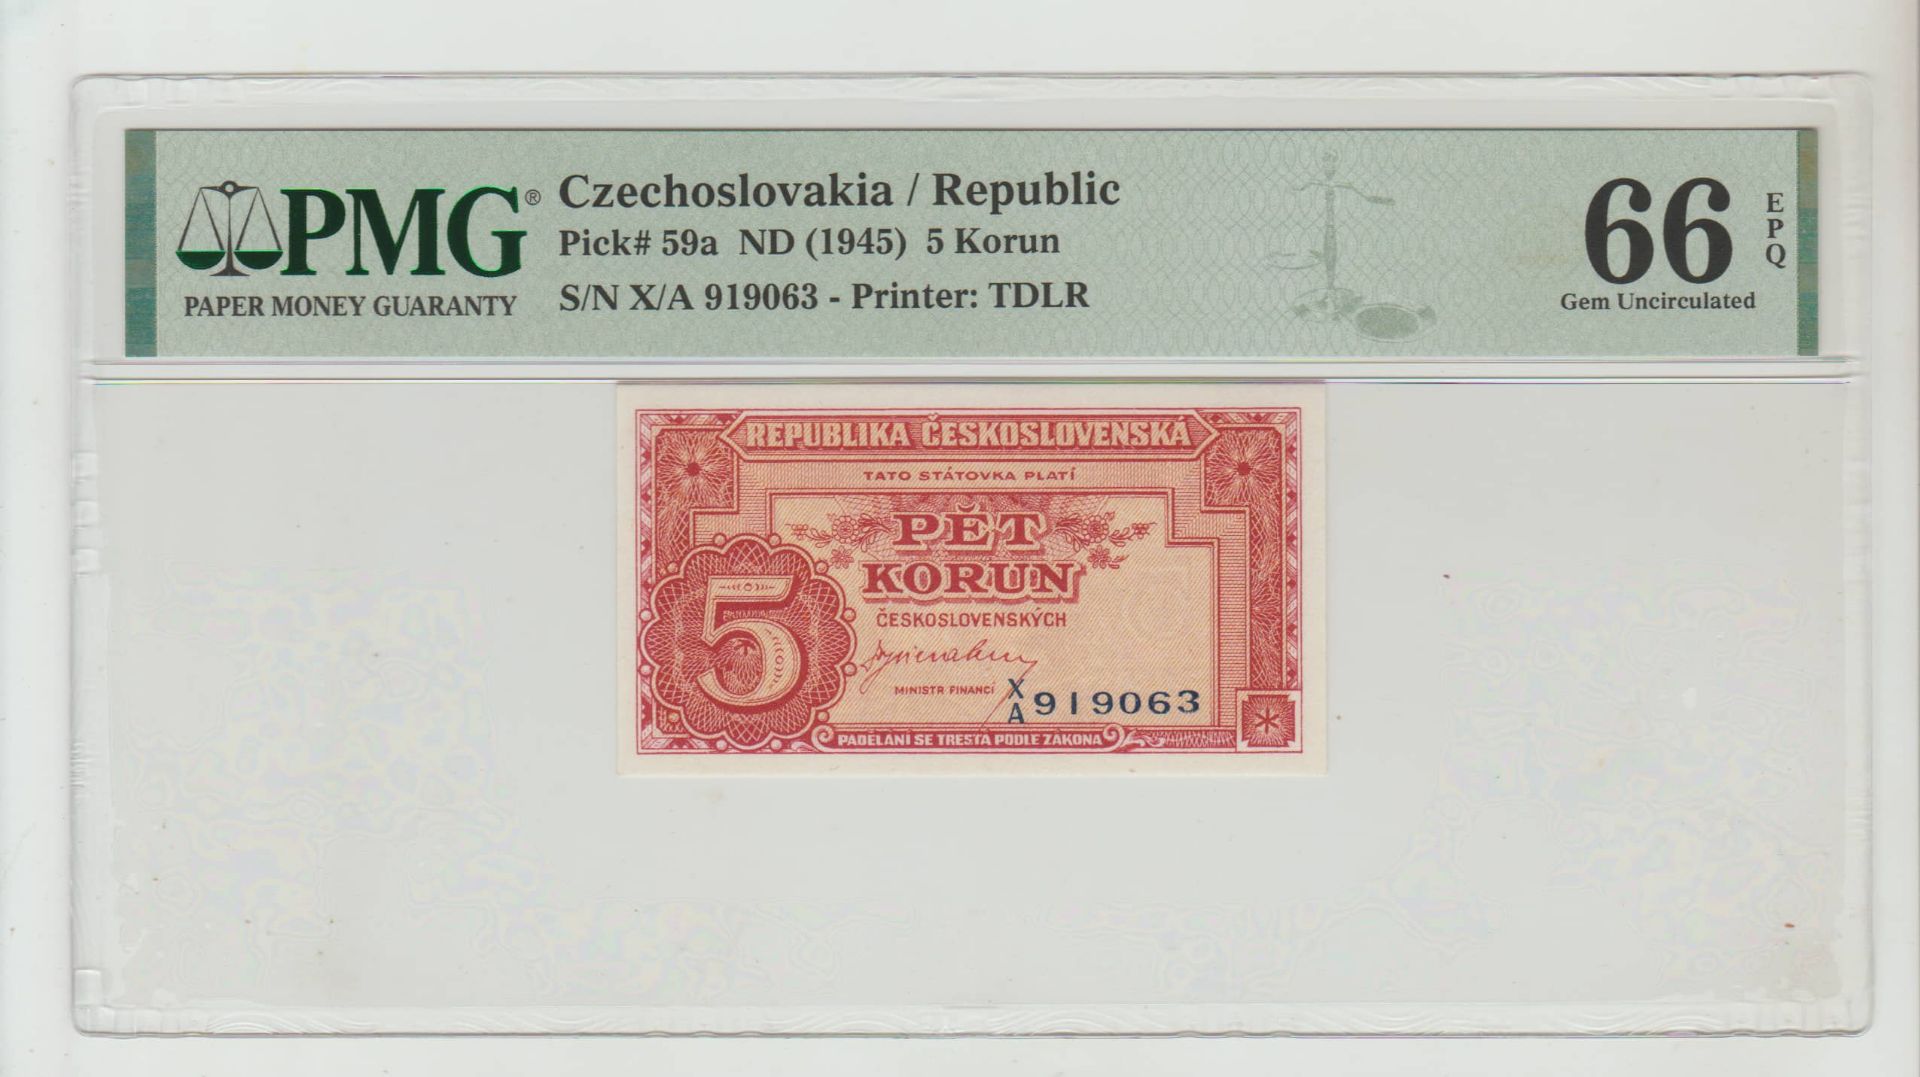 Czechoslovakia, 5 Korun, 1945 year, PMG 66